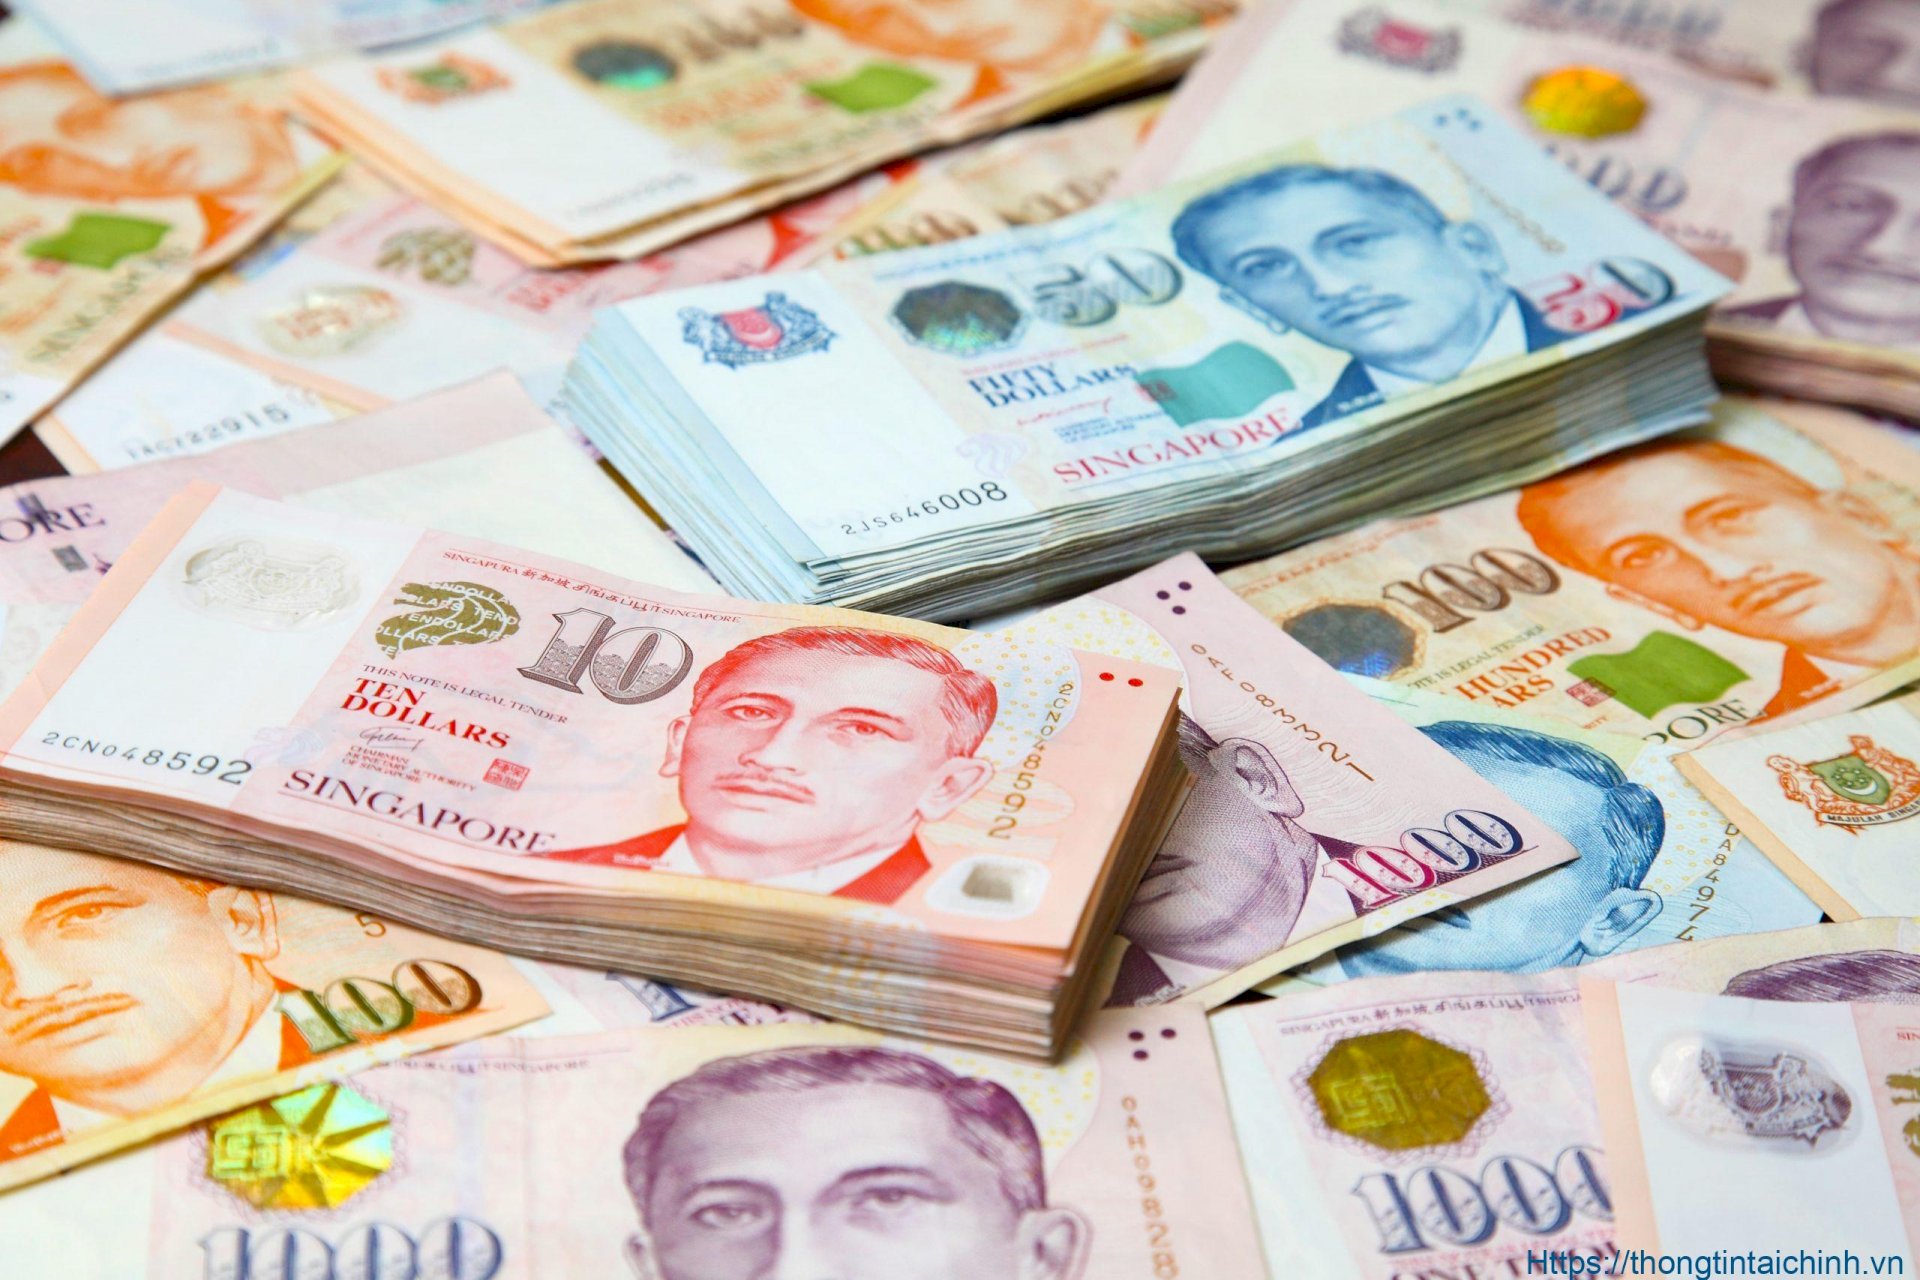 Hình ảnh tiền Singapore luôn ấn tượng với những hình dáng độc đáo và tiền lớn, to đùng. Với những màu sắc rực rỡ và hình ảnh sinh động, bạn sẽ cảm nhận được sức mạnh và giá trị của tiền chính là vô biên.